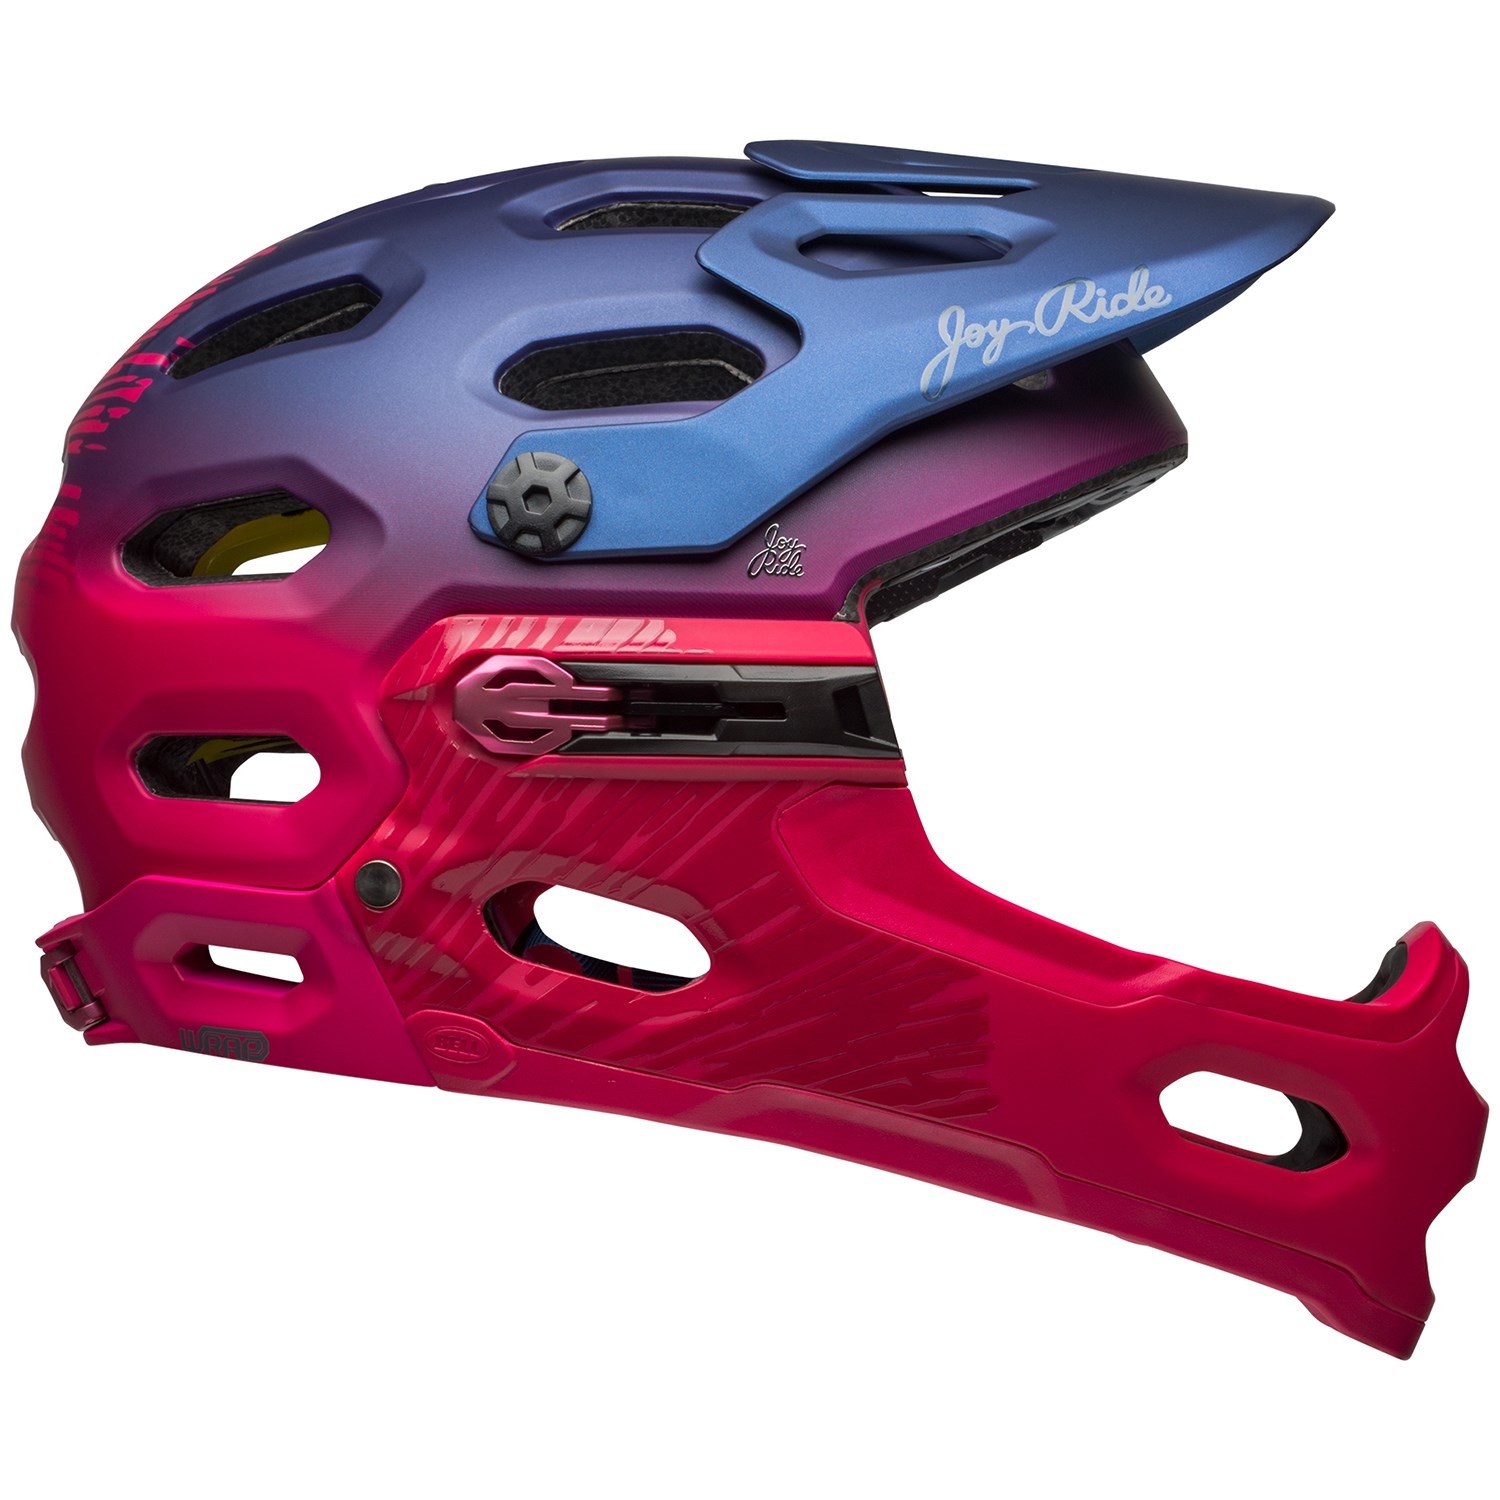 Bell Super 3R MIPS Joy Ride Bike Helmet - Women's | evo